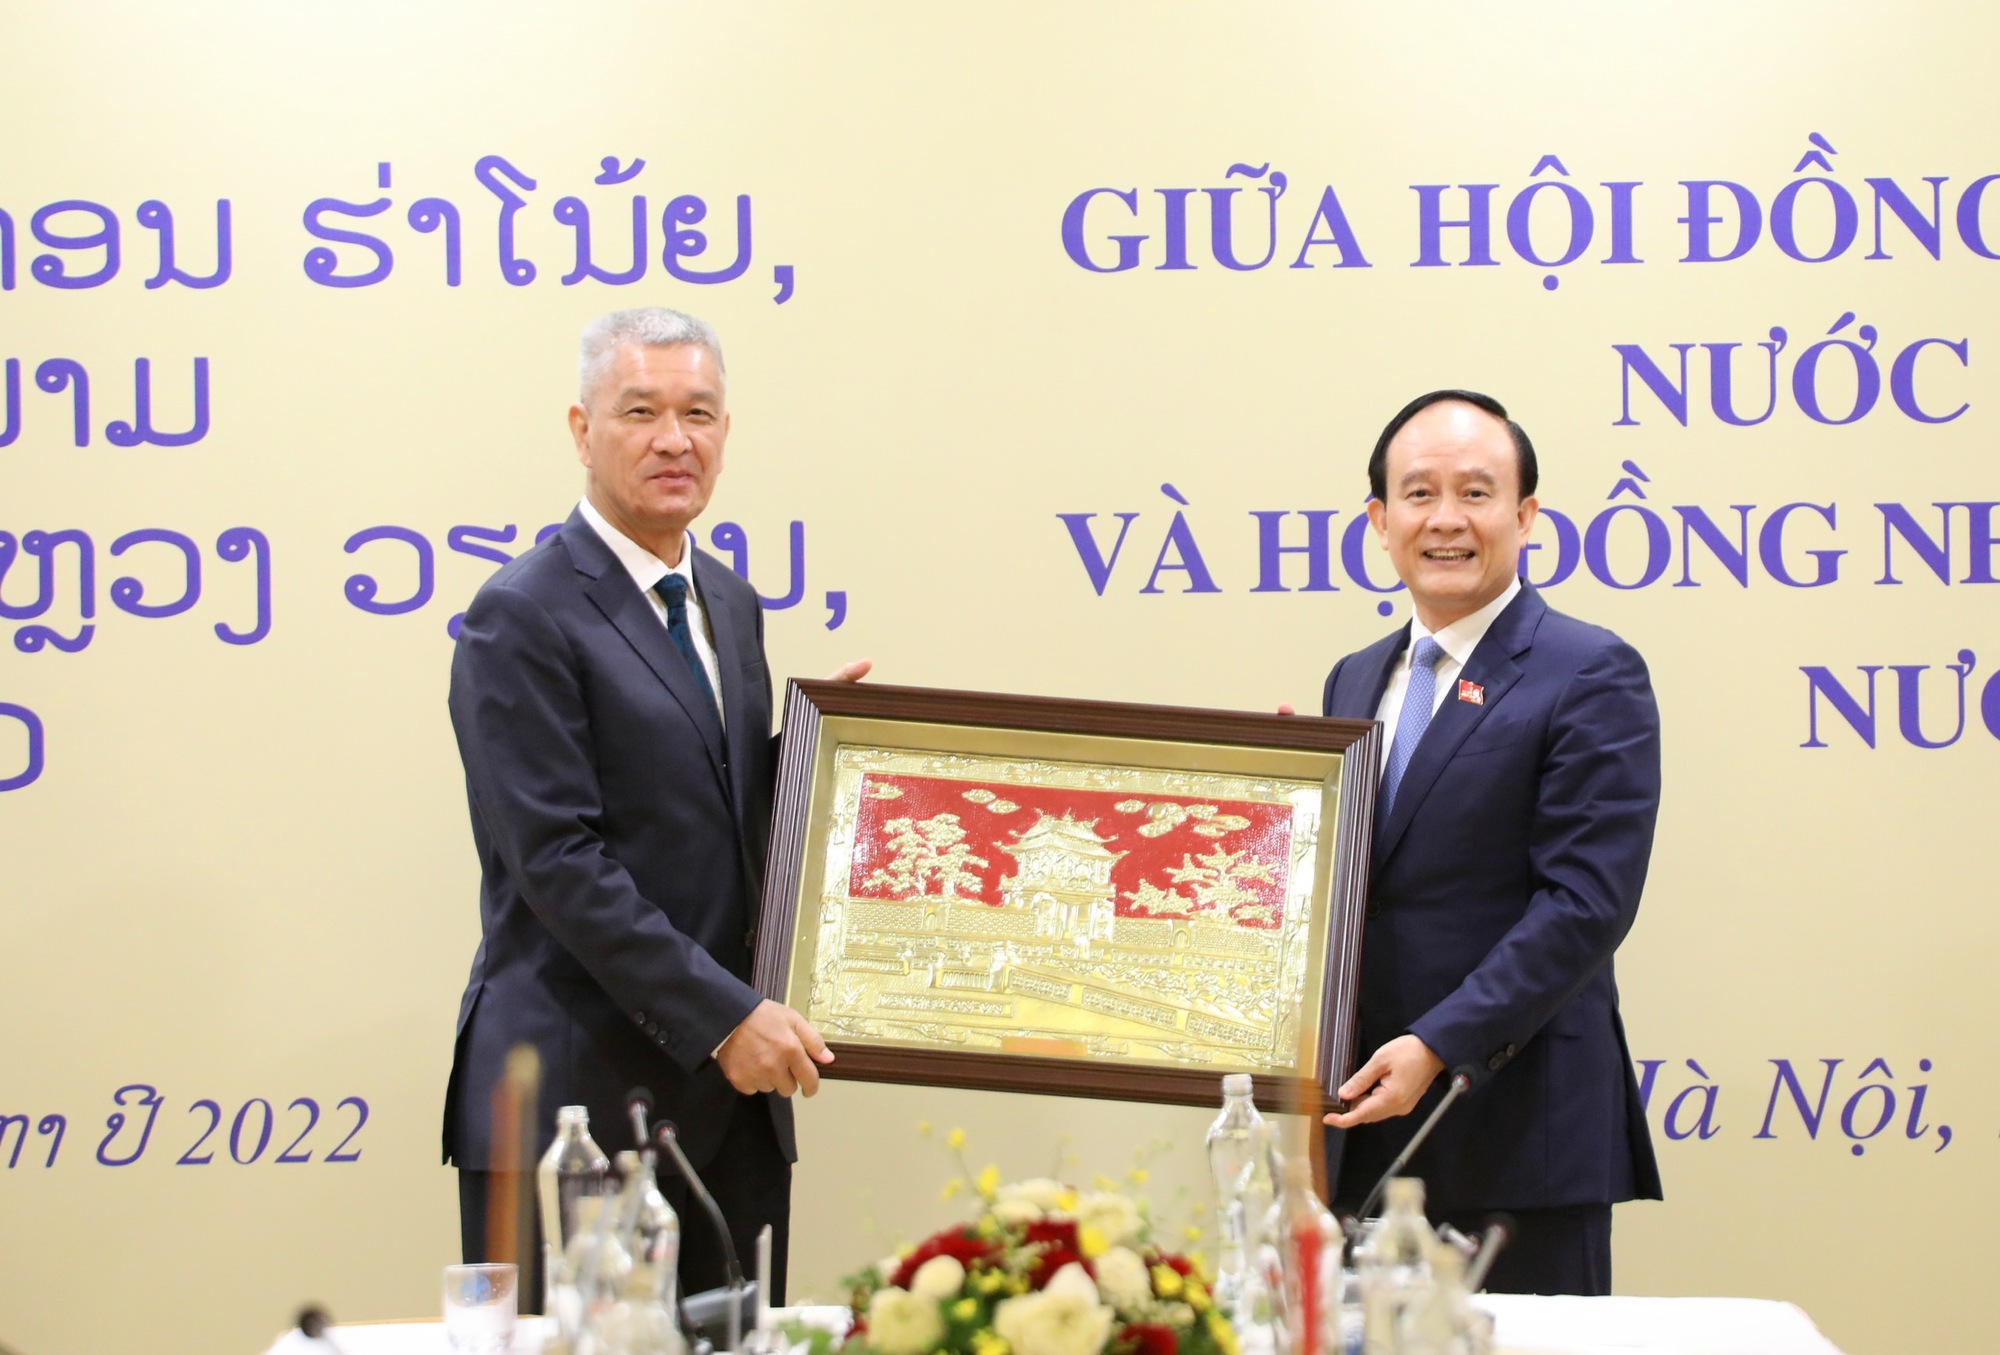 Thủ đô Hà Nội - Thủ đô Viêng Chăn: Tích cực phối hợp, nâng cao hiệu quả hoạt động của HĐND - Ảnh 3.